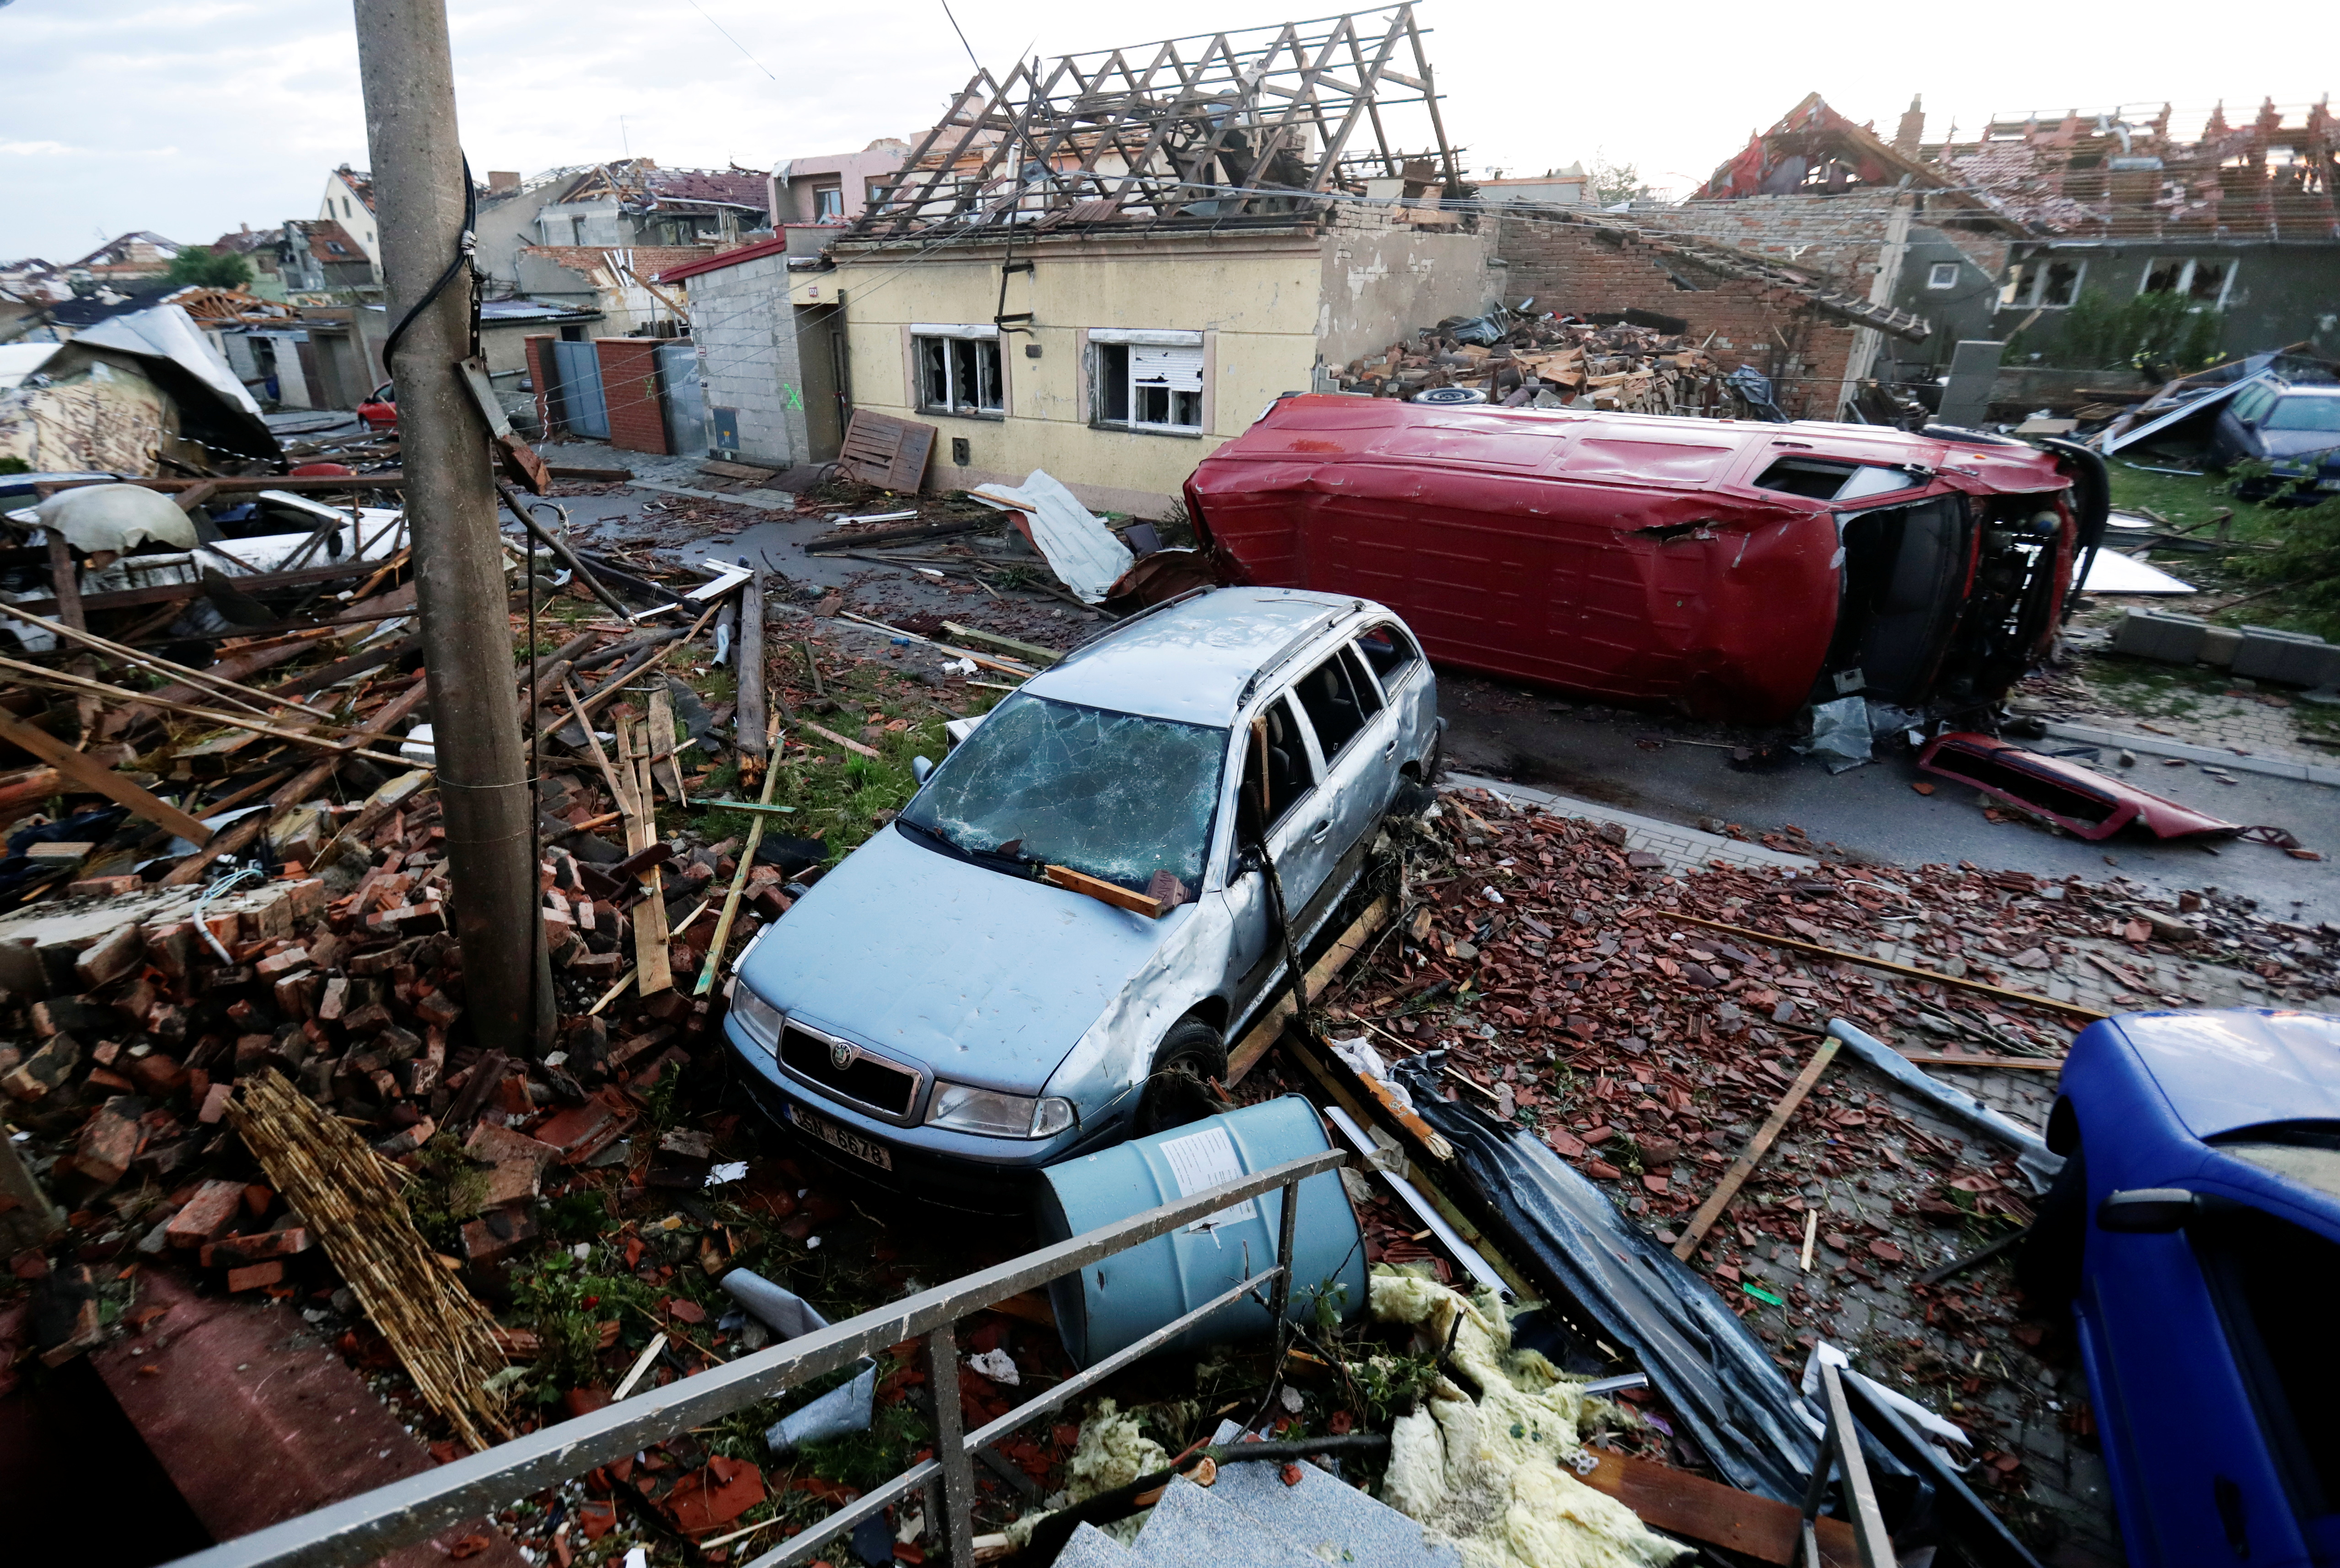 Aftermath of rare tornado in Czech Republic